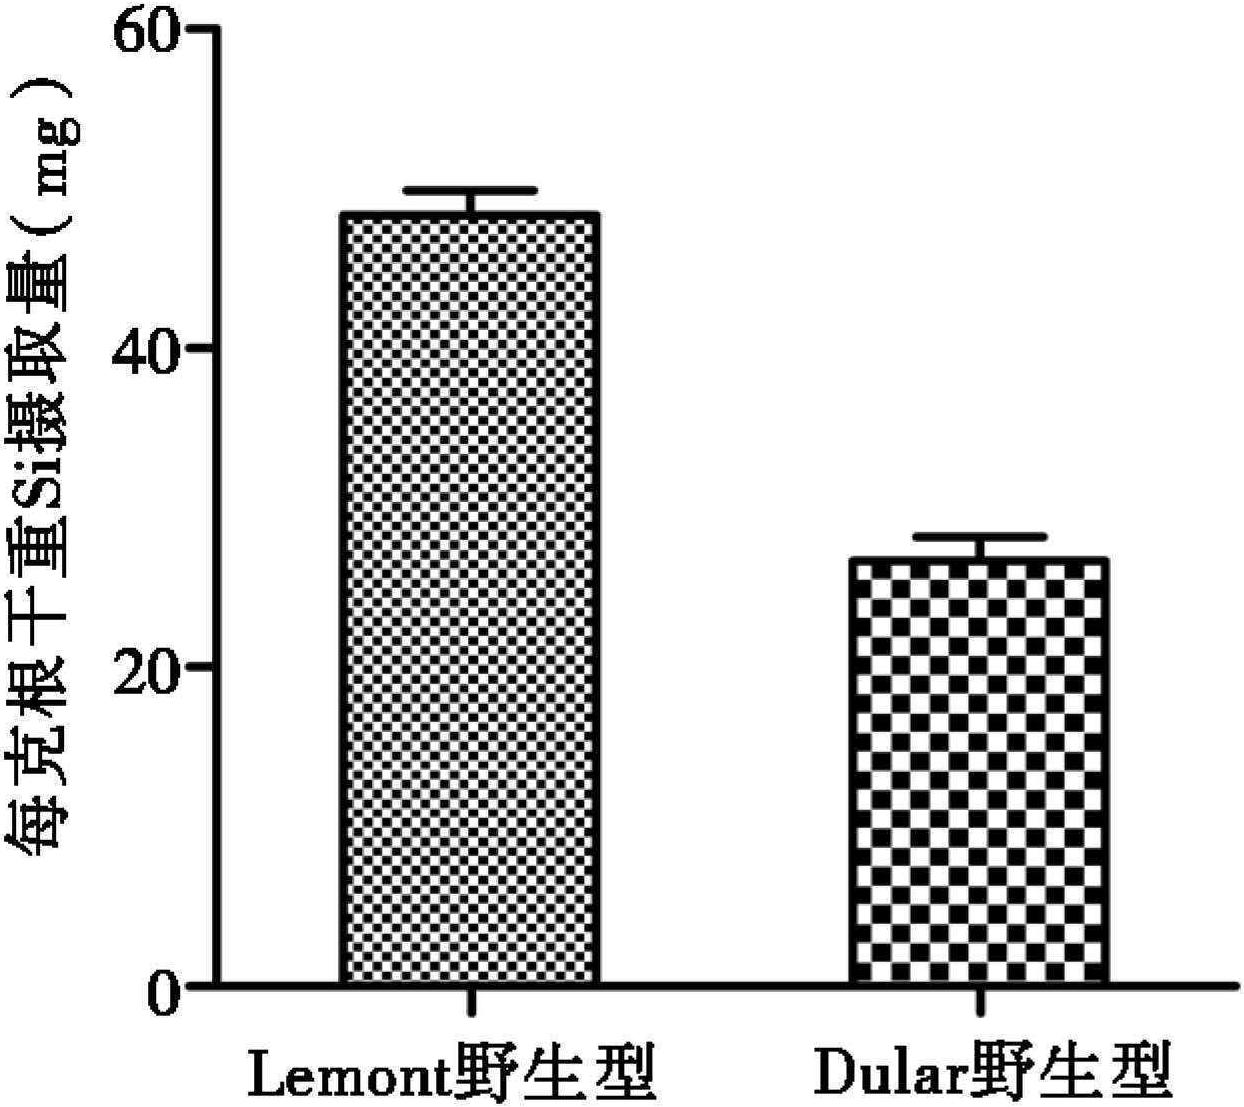 二、UV-B辐射抗性水稻品种Lemont与敏感水稻品种Dular的Lsi1基因及硅含量差异